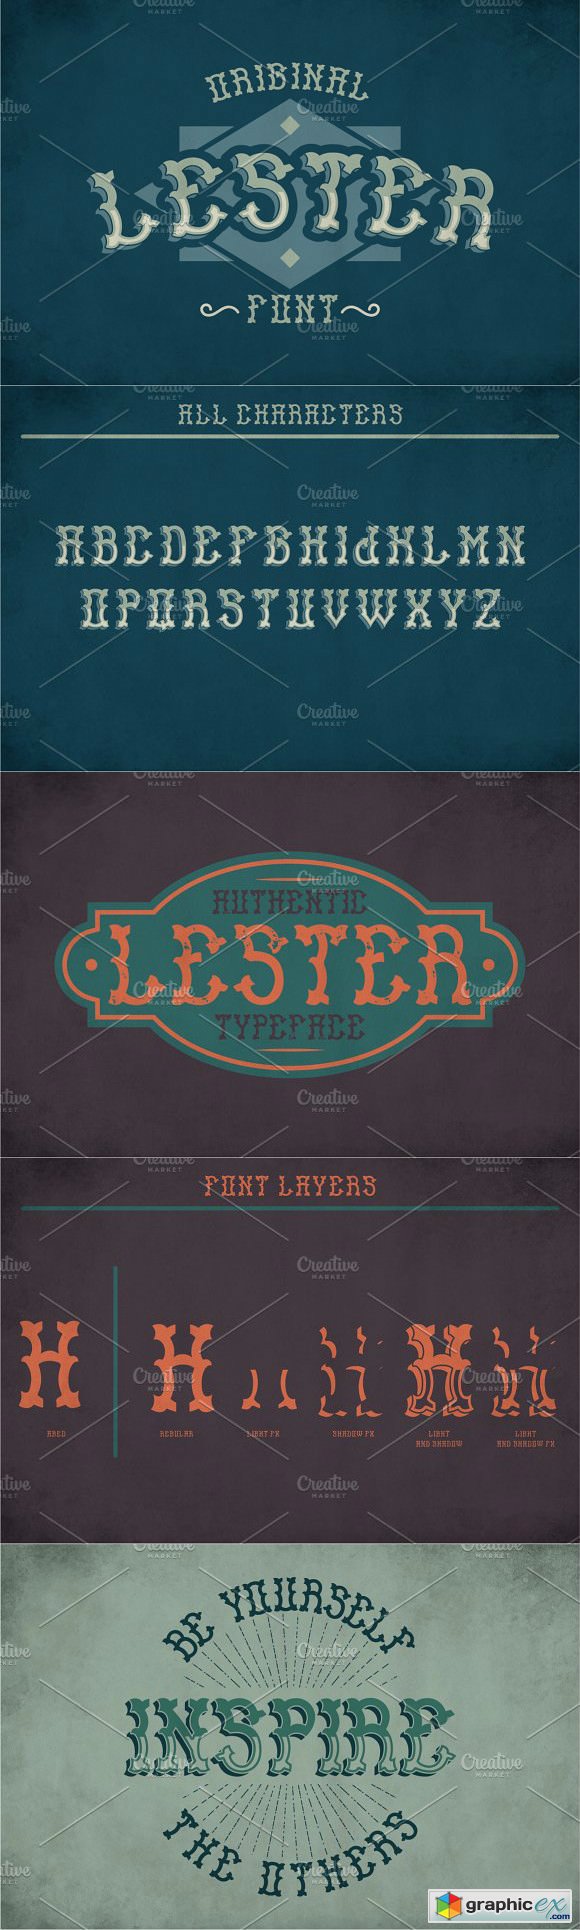 Lester Vintage Label Typeface